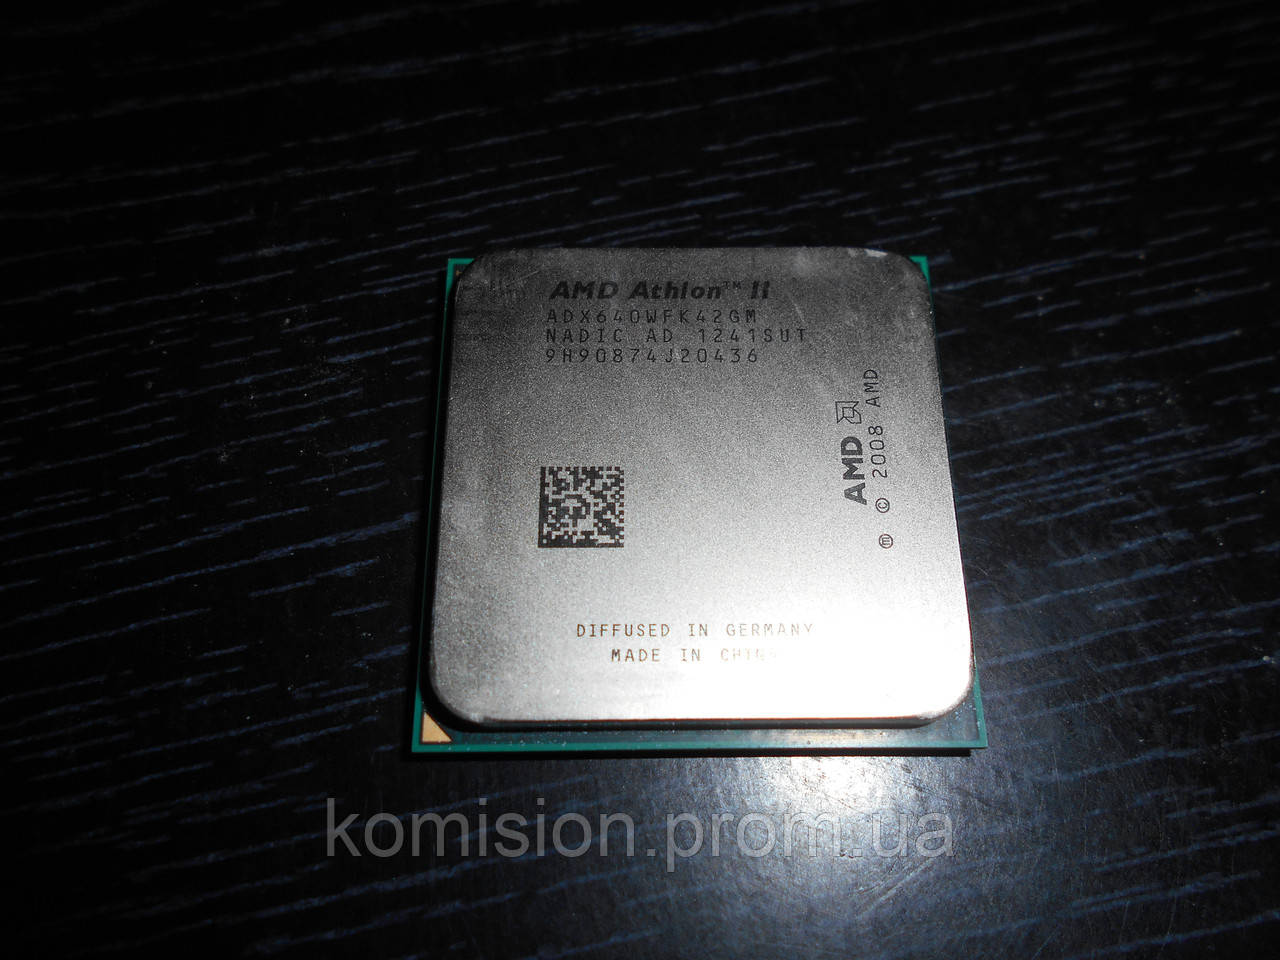 Amd athlon x4 3.00 ghz. AMD Athlon II x4 640 am3. AMD Athlon II x4 640 Processor 3.00 GHZ. AMD Athlon 2 x4 640 даташит. AMD Athlon II x4 640 am3 купить.